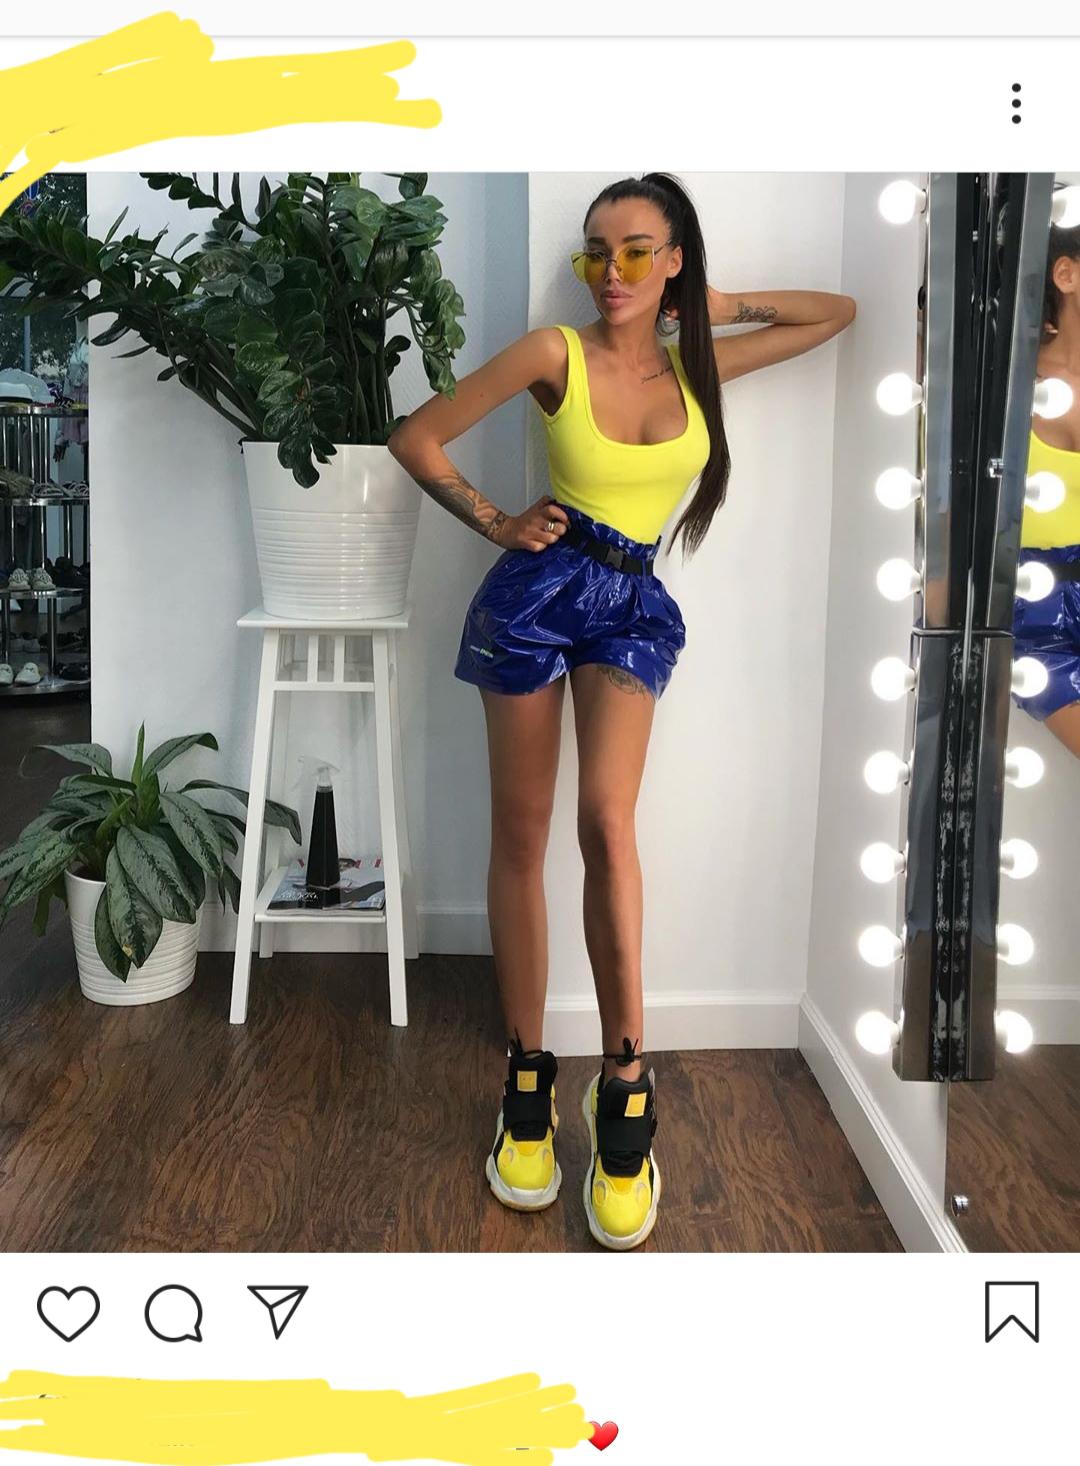 fake girls of Instagram - shoe - Ado